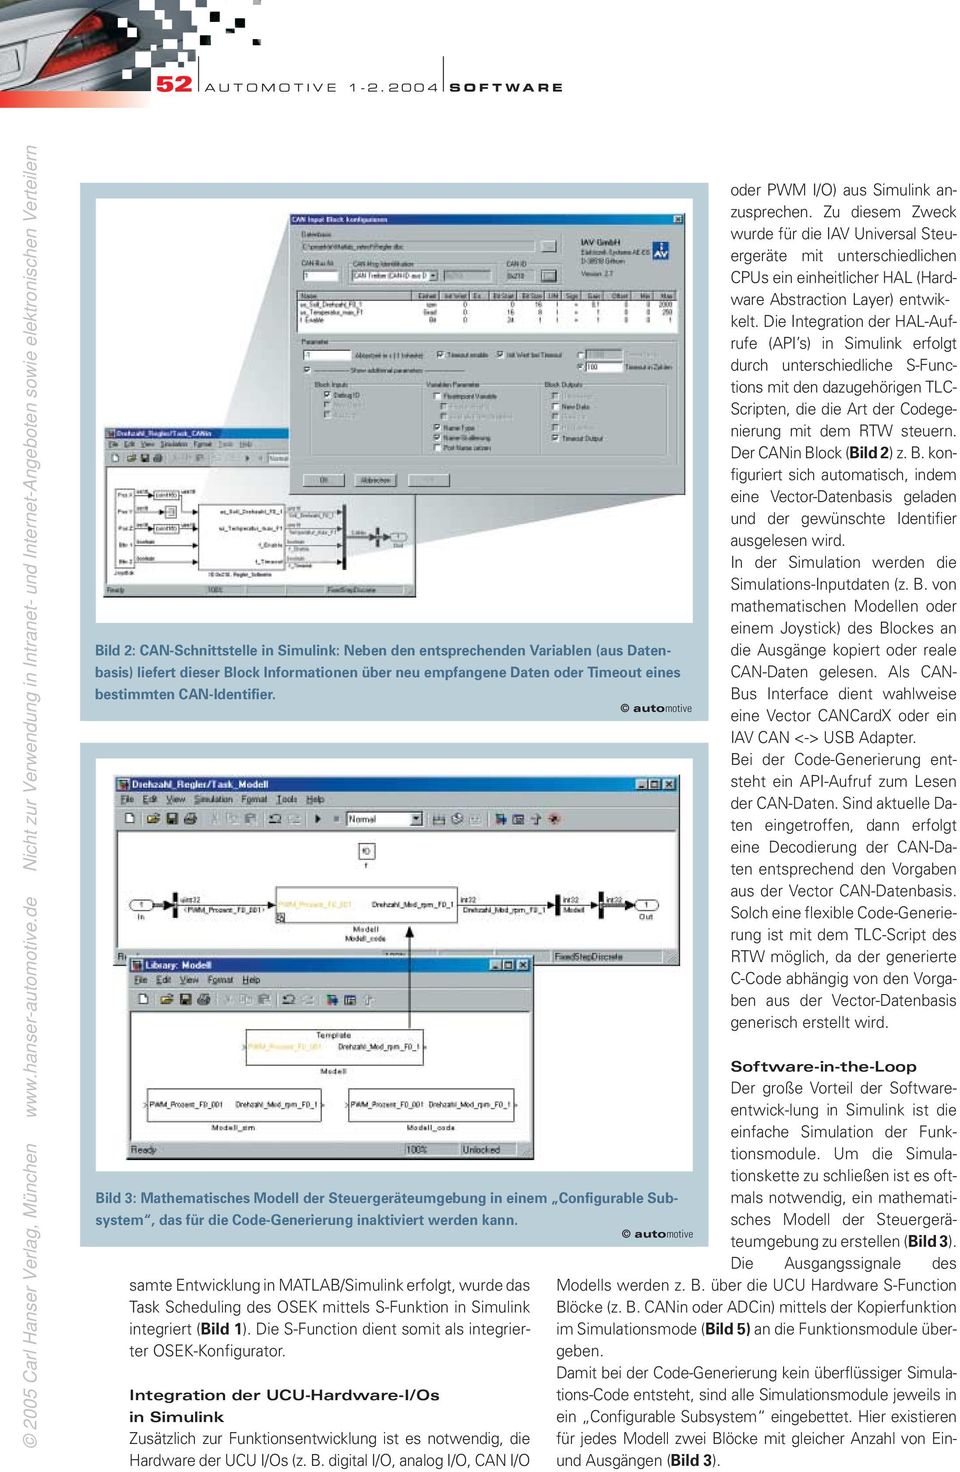 samte Entwicklung in MATLAB/Simulink erfolgt, wurde das Task Scheduling des OSEK mittels S-Funktion in Simulink integriert (Bild 1). Die S-Function dient somit als integrierter OSEK-Konfigurator.